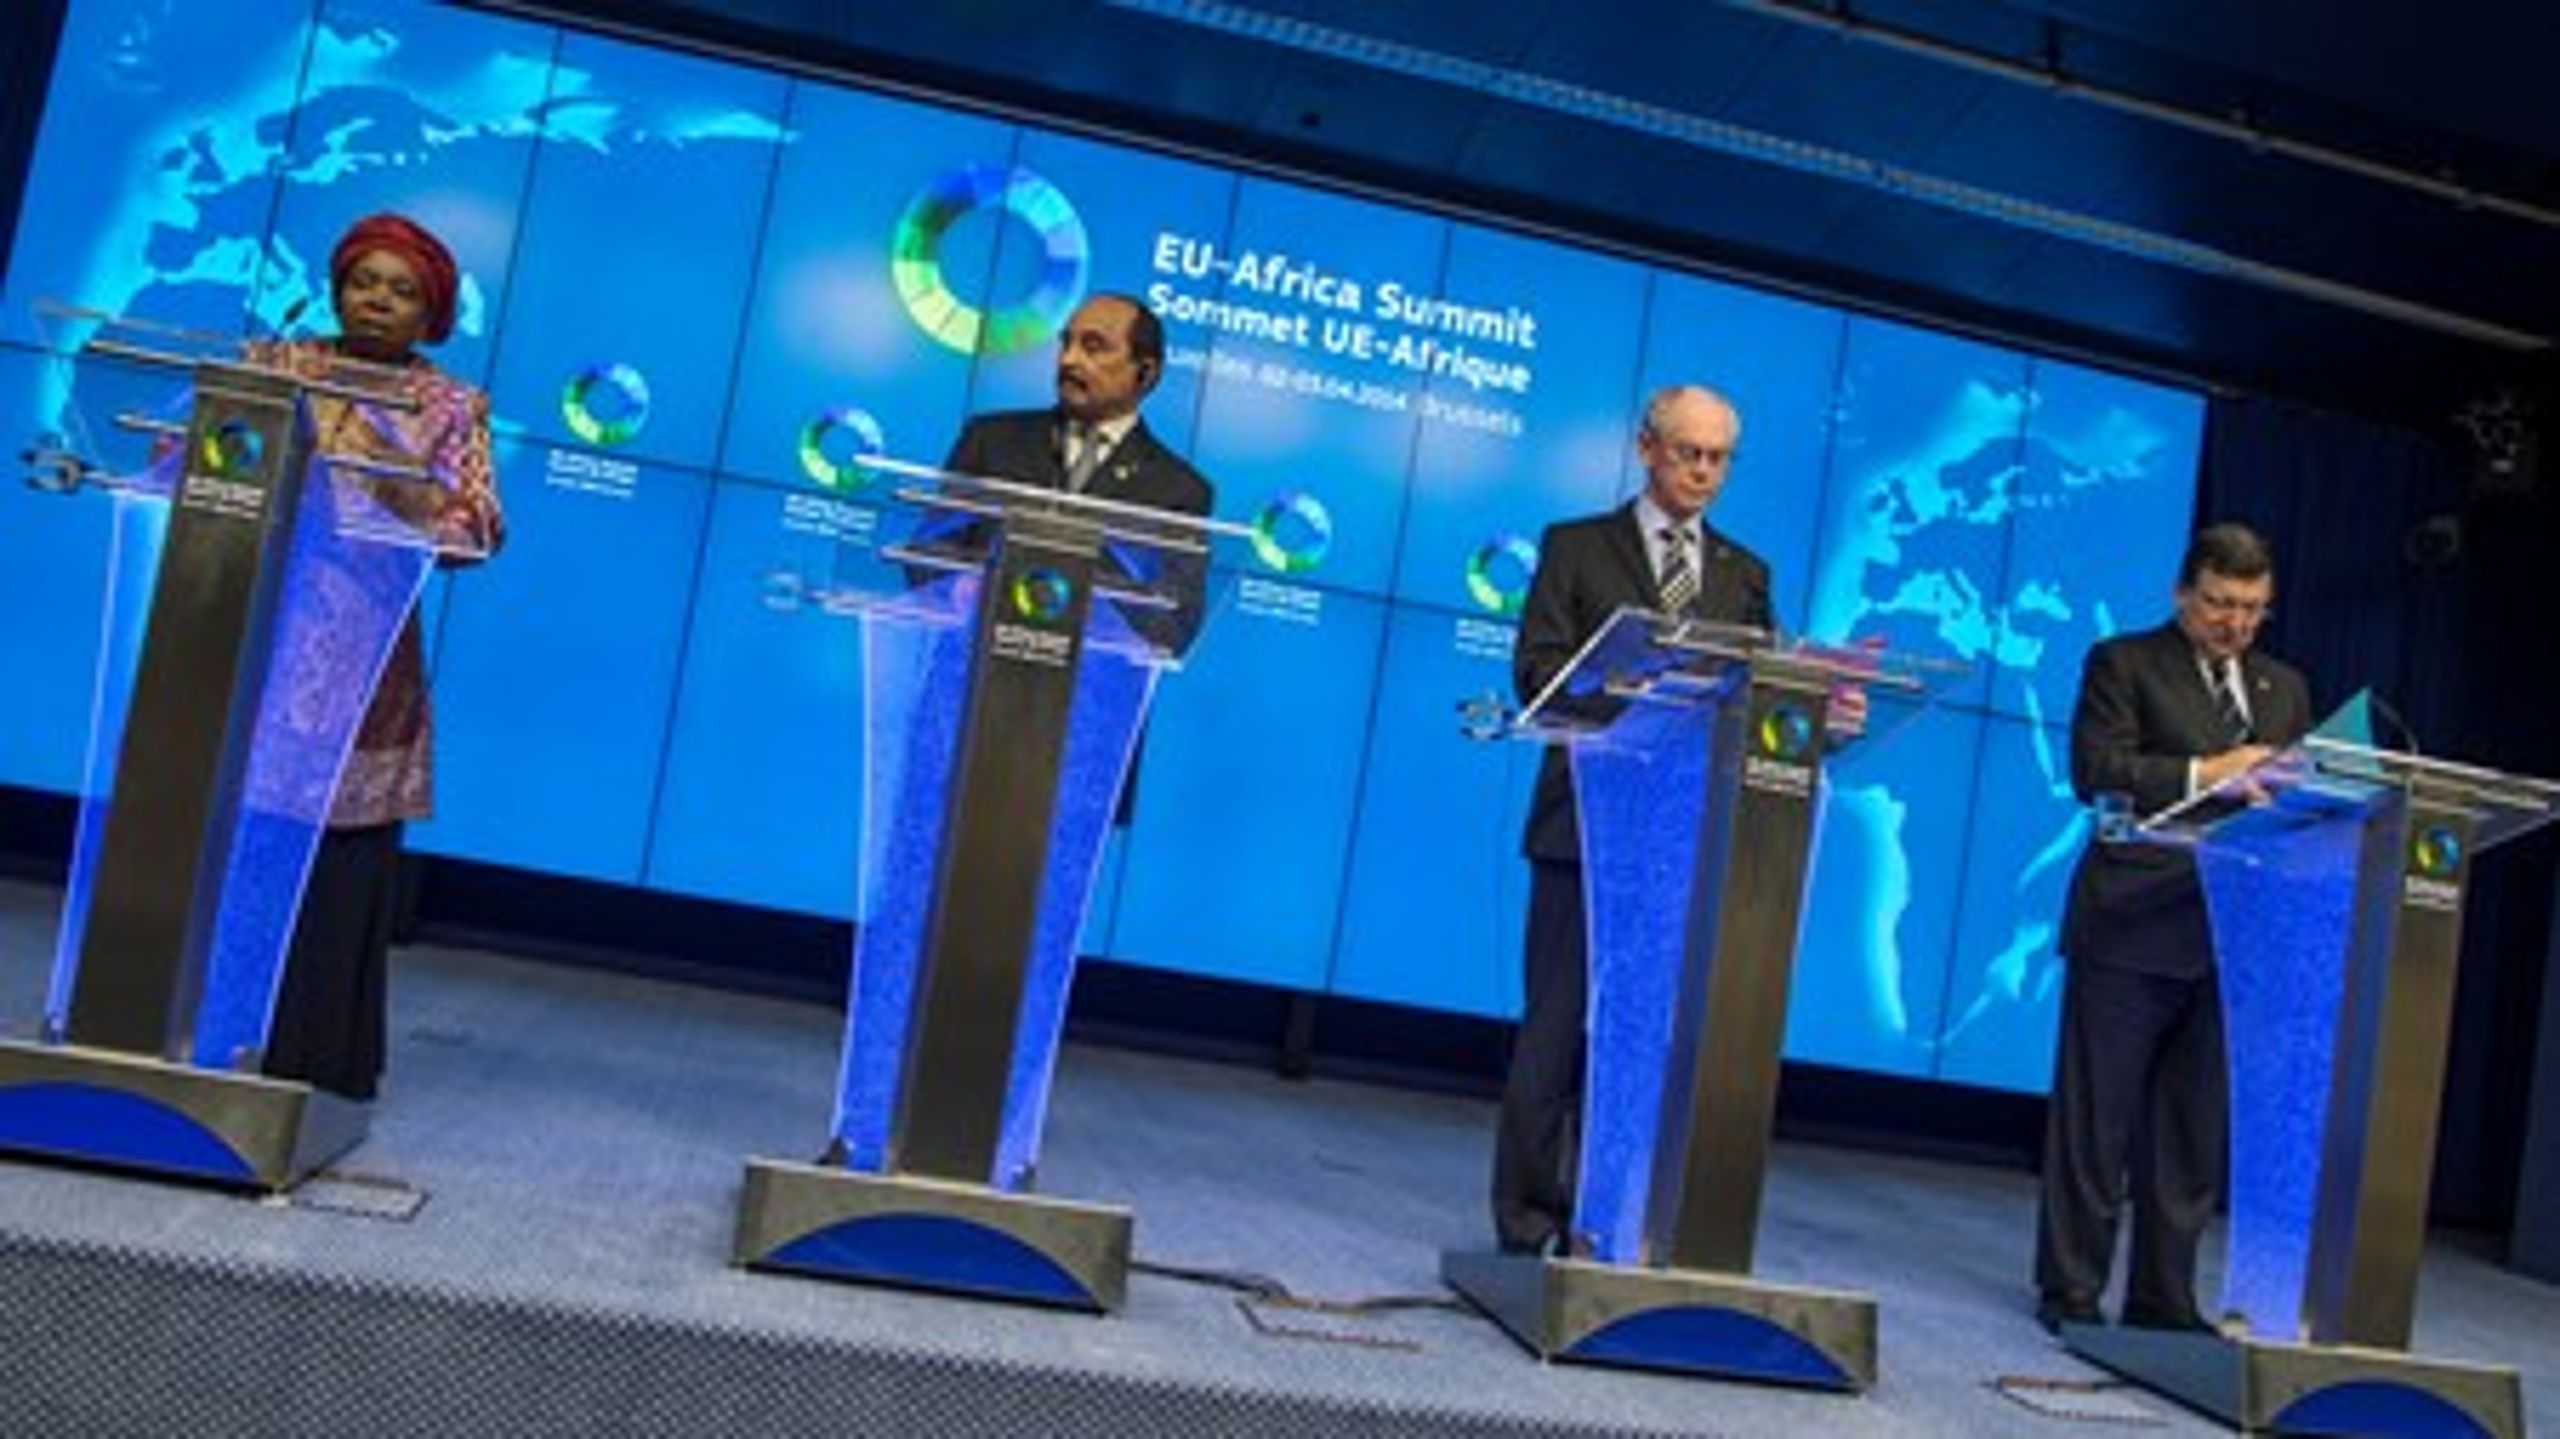 Ved topmødet mellem Afrika og&nbsp;EU i Bruxelles sidste år deltog&nbsp;Zimbabwes præsident Robert Mugabe ikke, da han har indrejseforbud i unionen. De næste fem år kan han dog se frem til støtte fra EU i form af 1,7 milliarder bistandskroner.&nbsp;